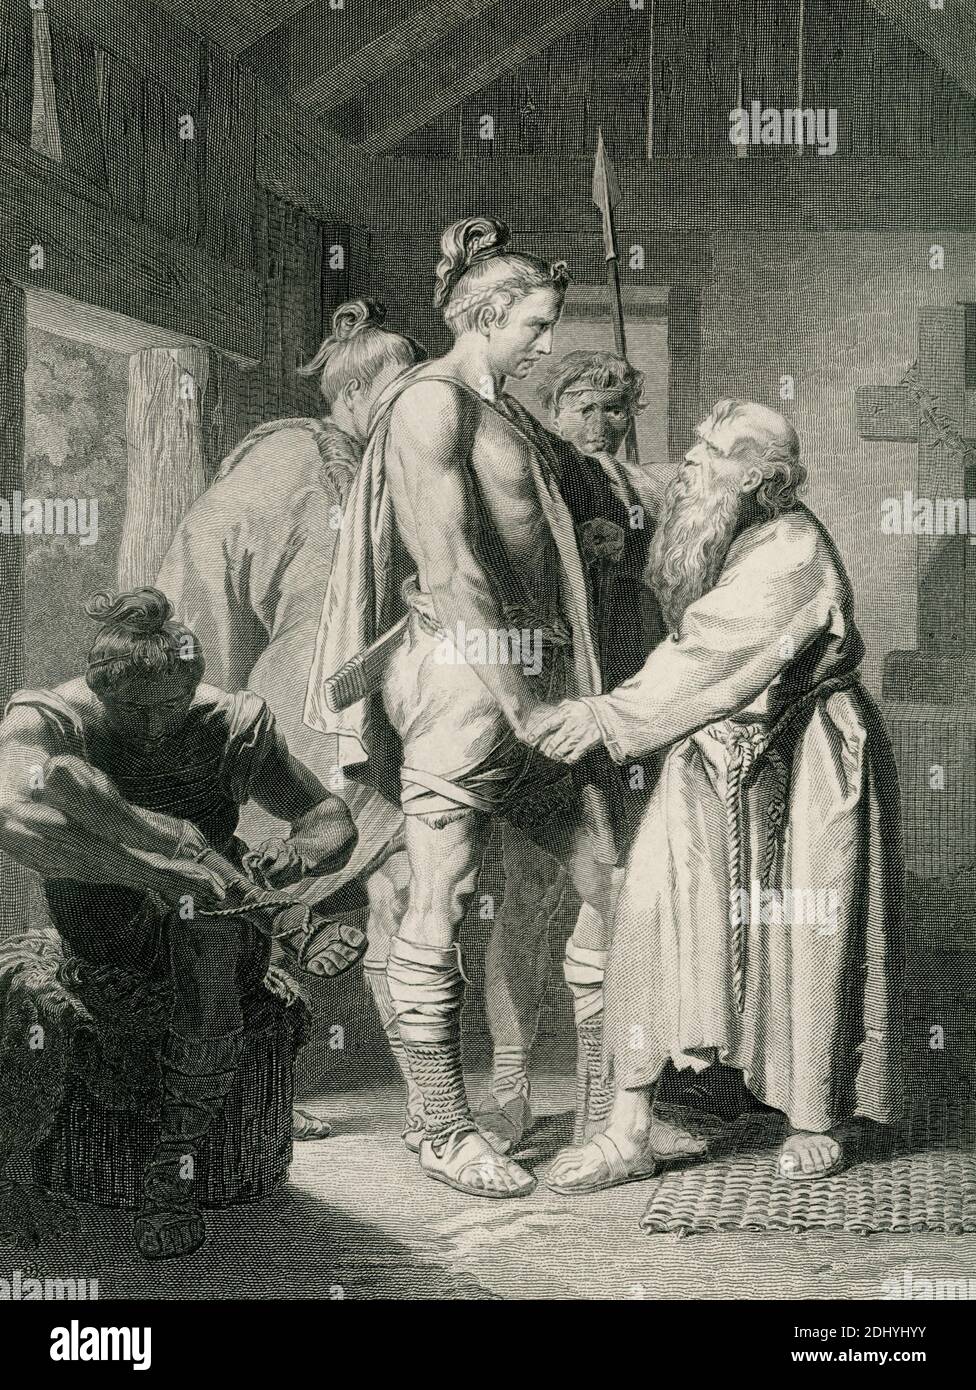 St Severinus et Odacer peint par O Eville. Odoacer (environ A.D. 435-493) était un chef germanique qui servait avec ses soldats comme mercenaires de Rome. En 476, son peuple, les Heruli, se révolta et le proclama roi. Odoacer dédort ensuite Romulus Augustulus, le dernier empereur romain de l'Occident. Dans cette illustration de la fin des années 1800, Odoacer (au centre) est montré entrant dans la petite demeure du moine respecté St. Severinus (à droite) pour demander son avis et sa bénédiction. Banque D'Images